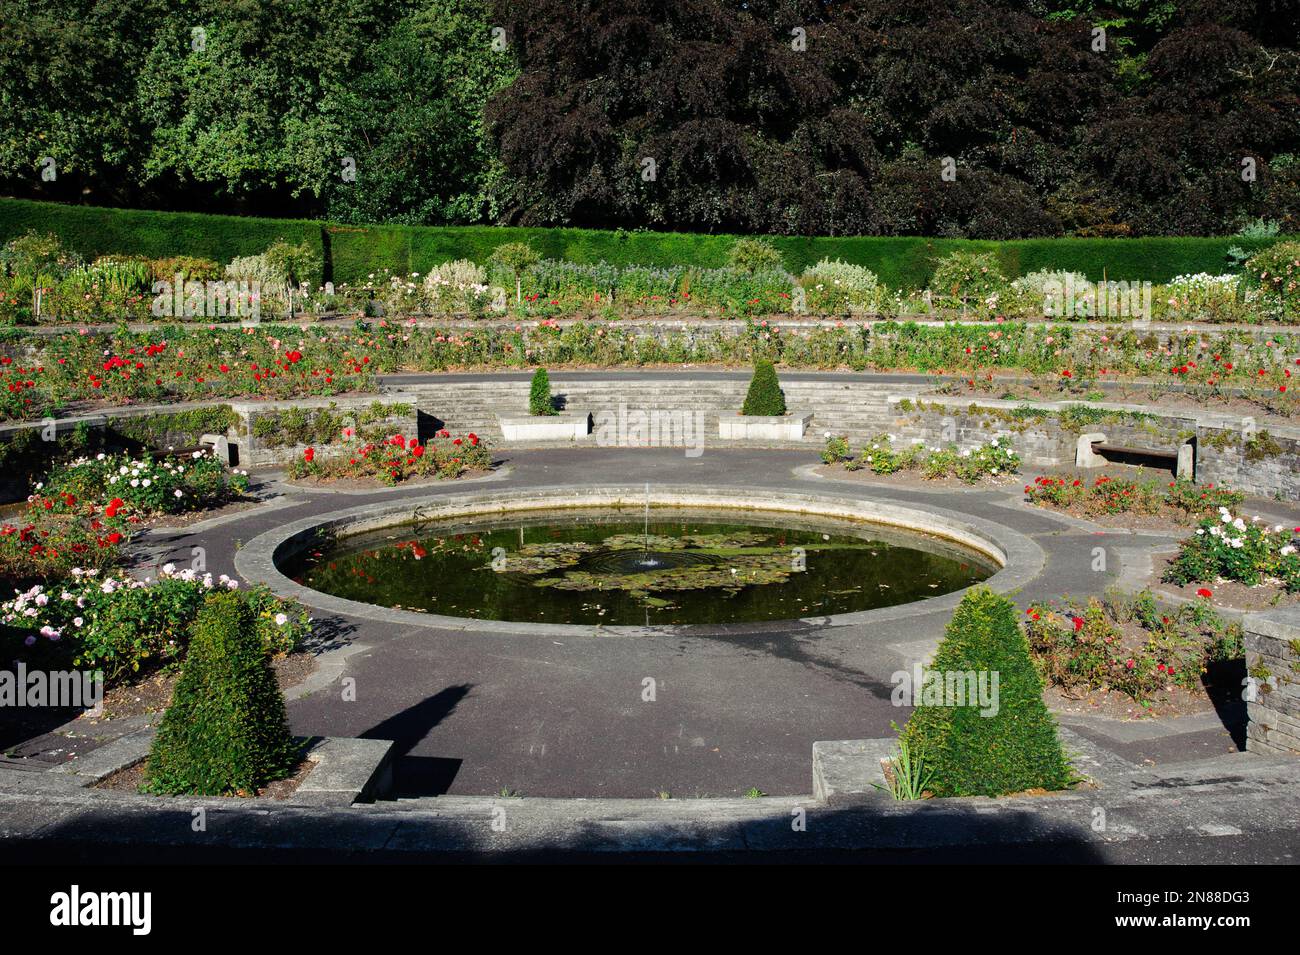 Jardin de roses dans War Memorial Gardens à Islandbridge, Dublin. Conçu par Sir Edwin Lutyens comme un mémorial de WW1, conçu en 1930 Banque D'Images